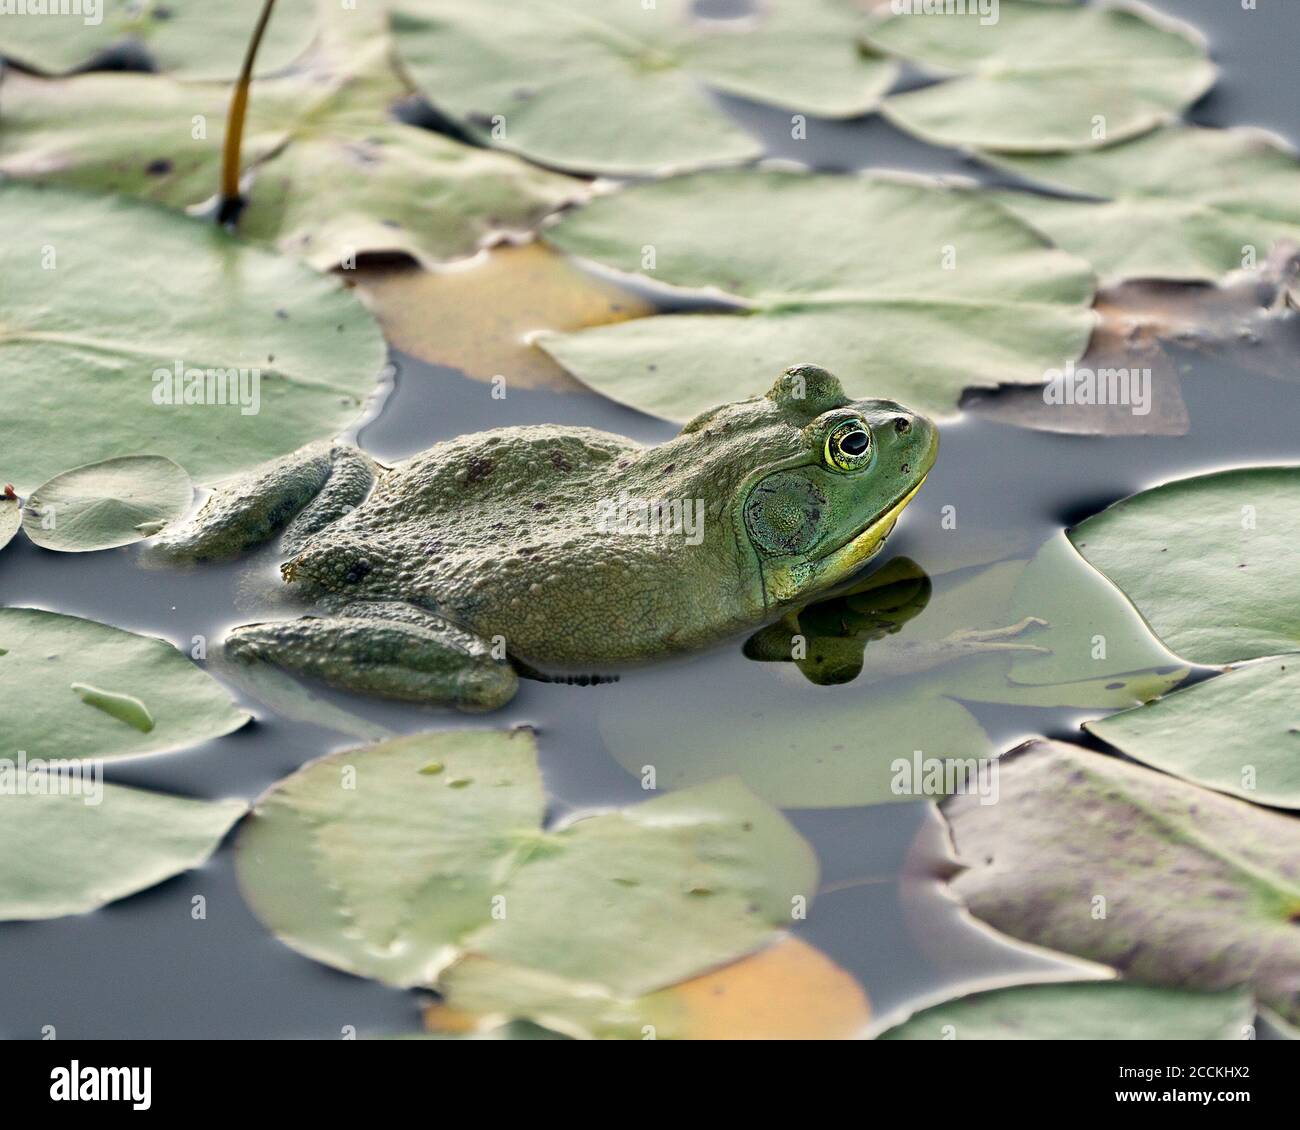 Frosch auf einer Seerose im Wasser sitzend, zeigt grünen Körper, Kopf, Beine, Auge in seiner Umgebung und Umgebung, Blick nach rechts. Stockfoto